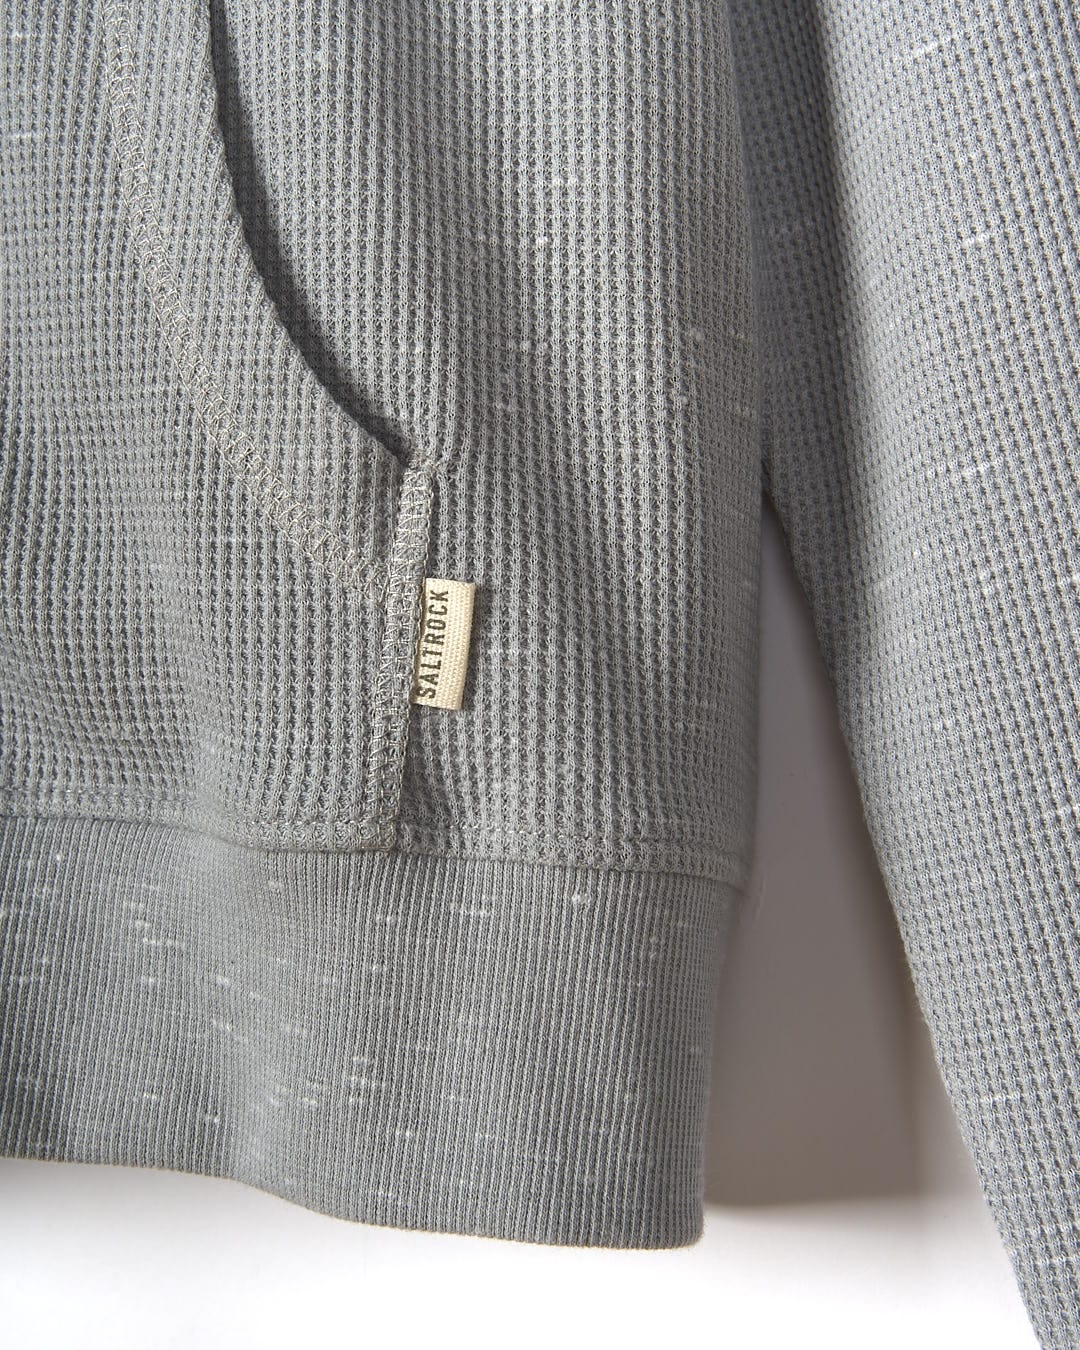 A close up of a Saltrock Rosalin - Womens Zip Hoodie - Light Grey.